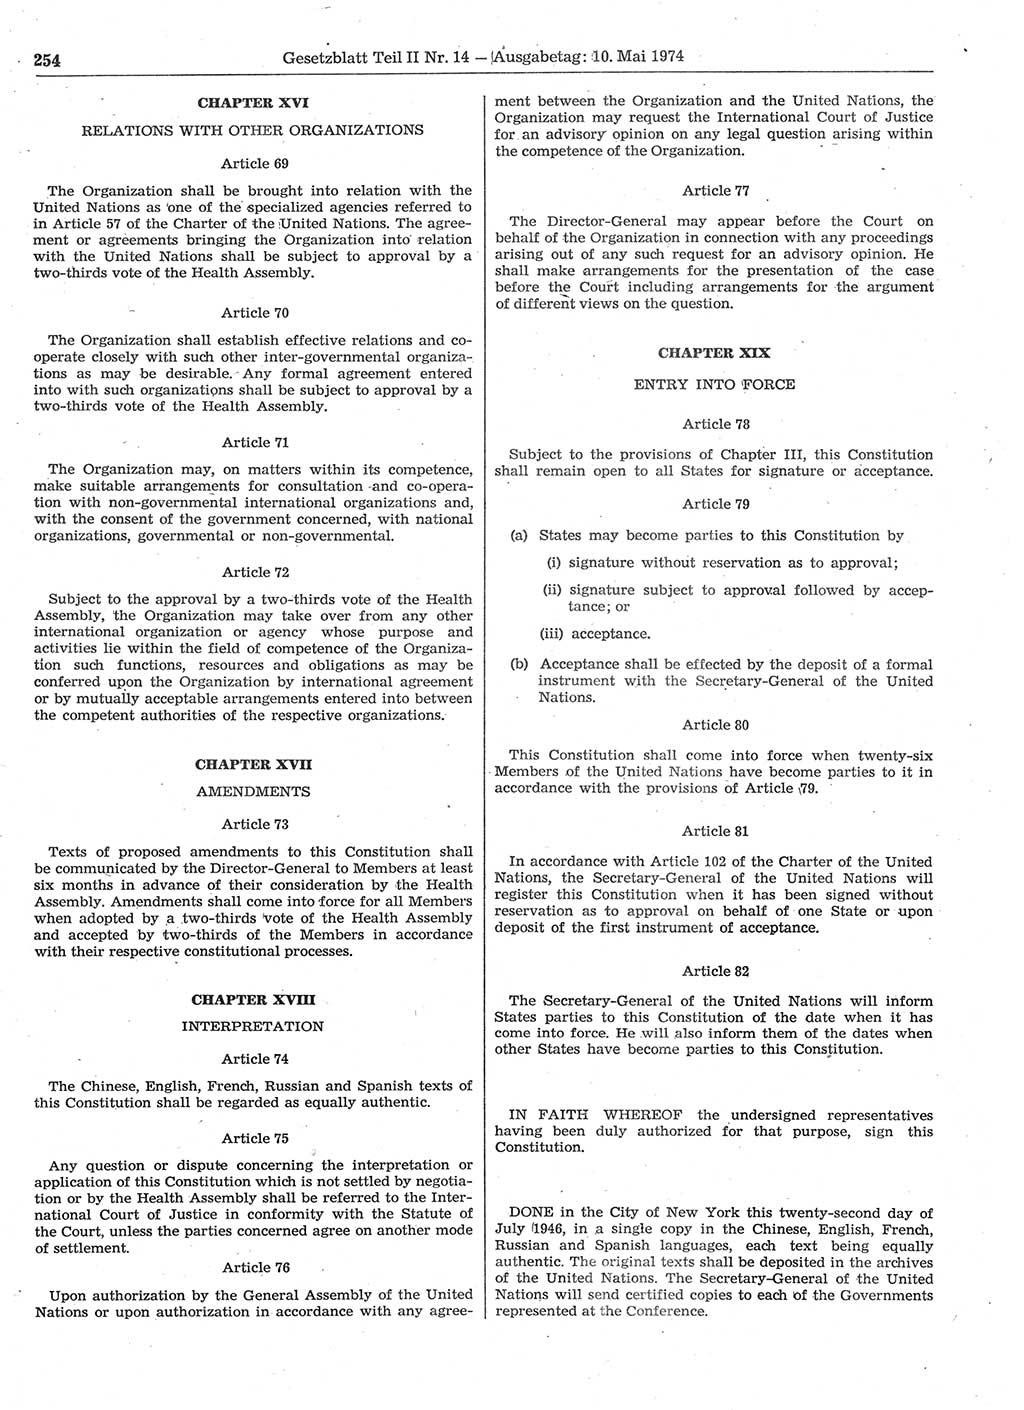 Gesetzblatt (GBl.) der Deutschen Demokratischen Republik (DDR) Teil ⅠⅠ 1974, Seite 254 (GBl. DDR ⅠⅠ 1974, S. 254)